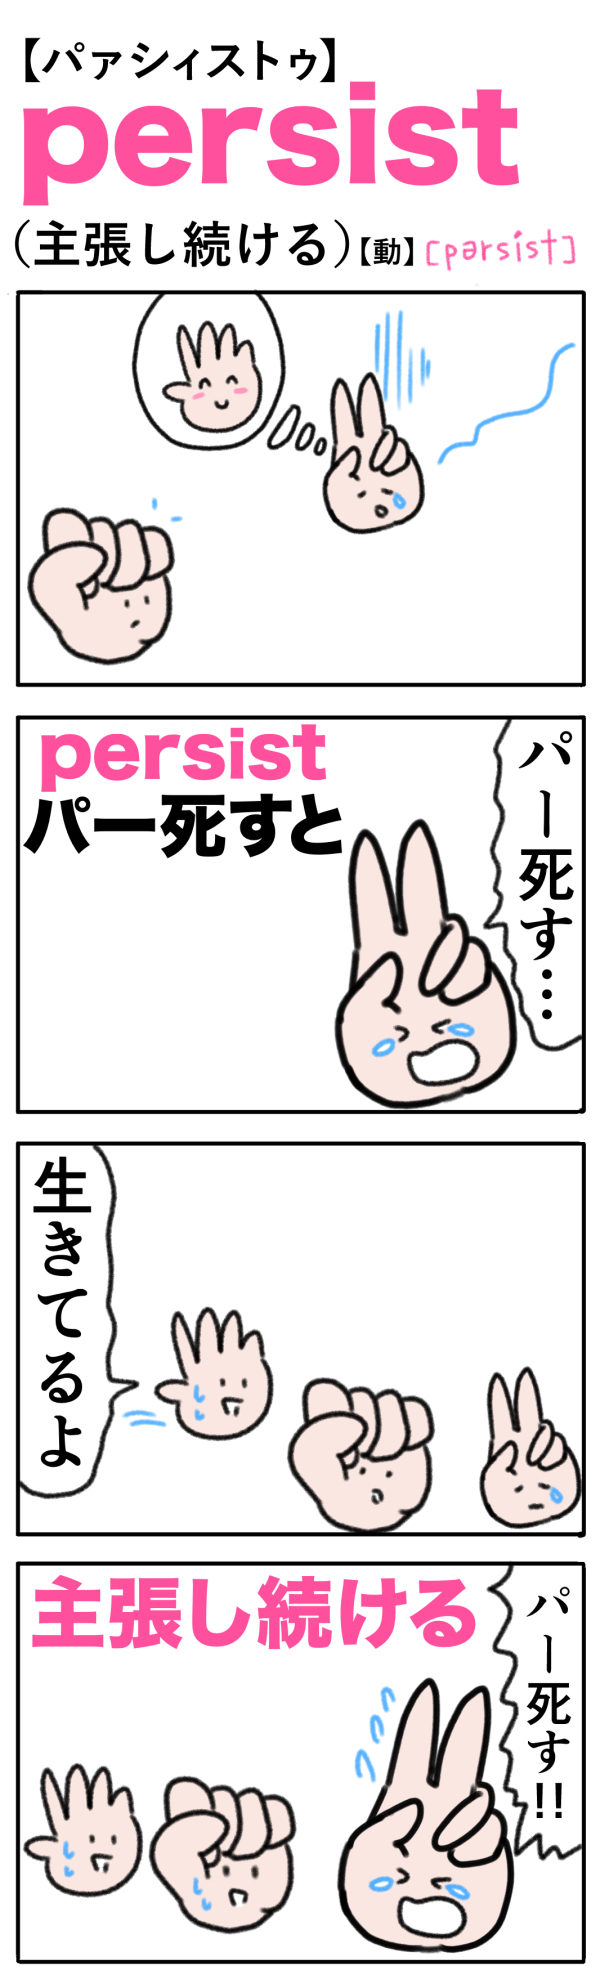 persist（主張し続ける）の語呂合わせ英単語